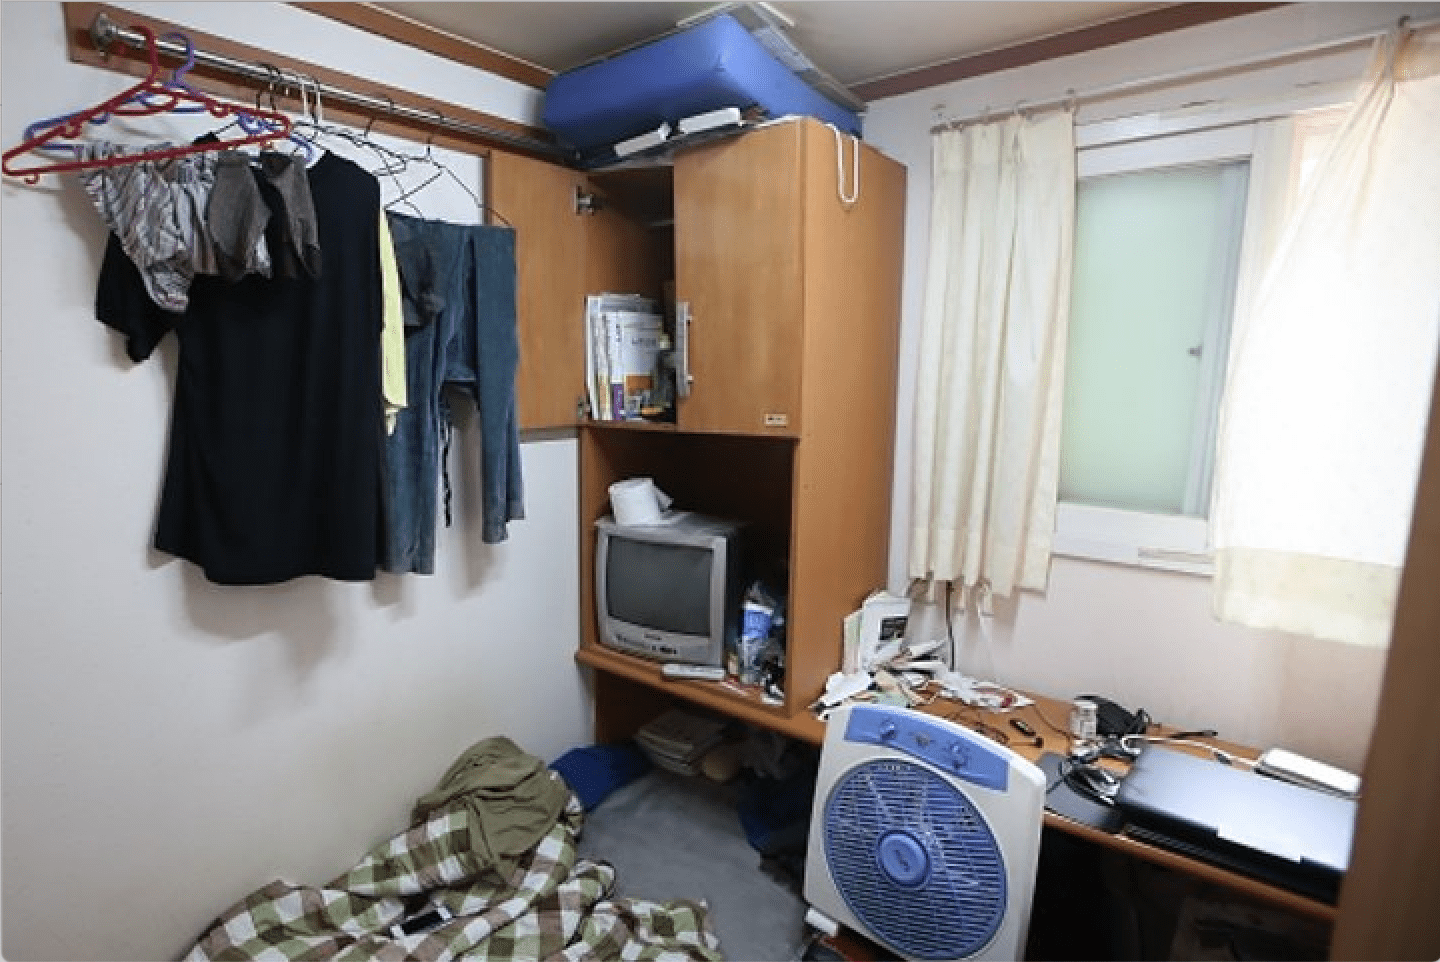 Hình ảnh một căn hộ nhỏ ở Hàn Quốc.